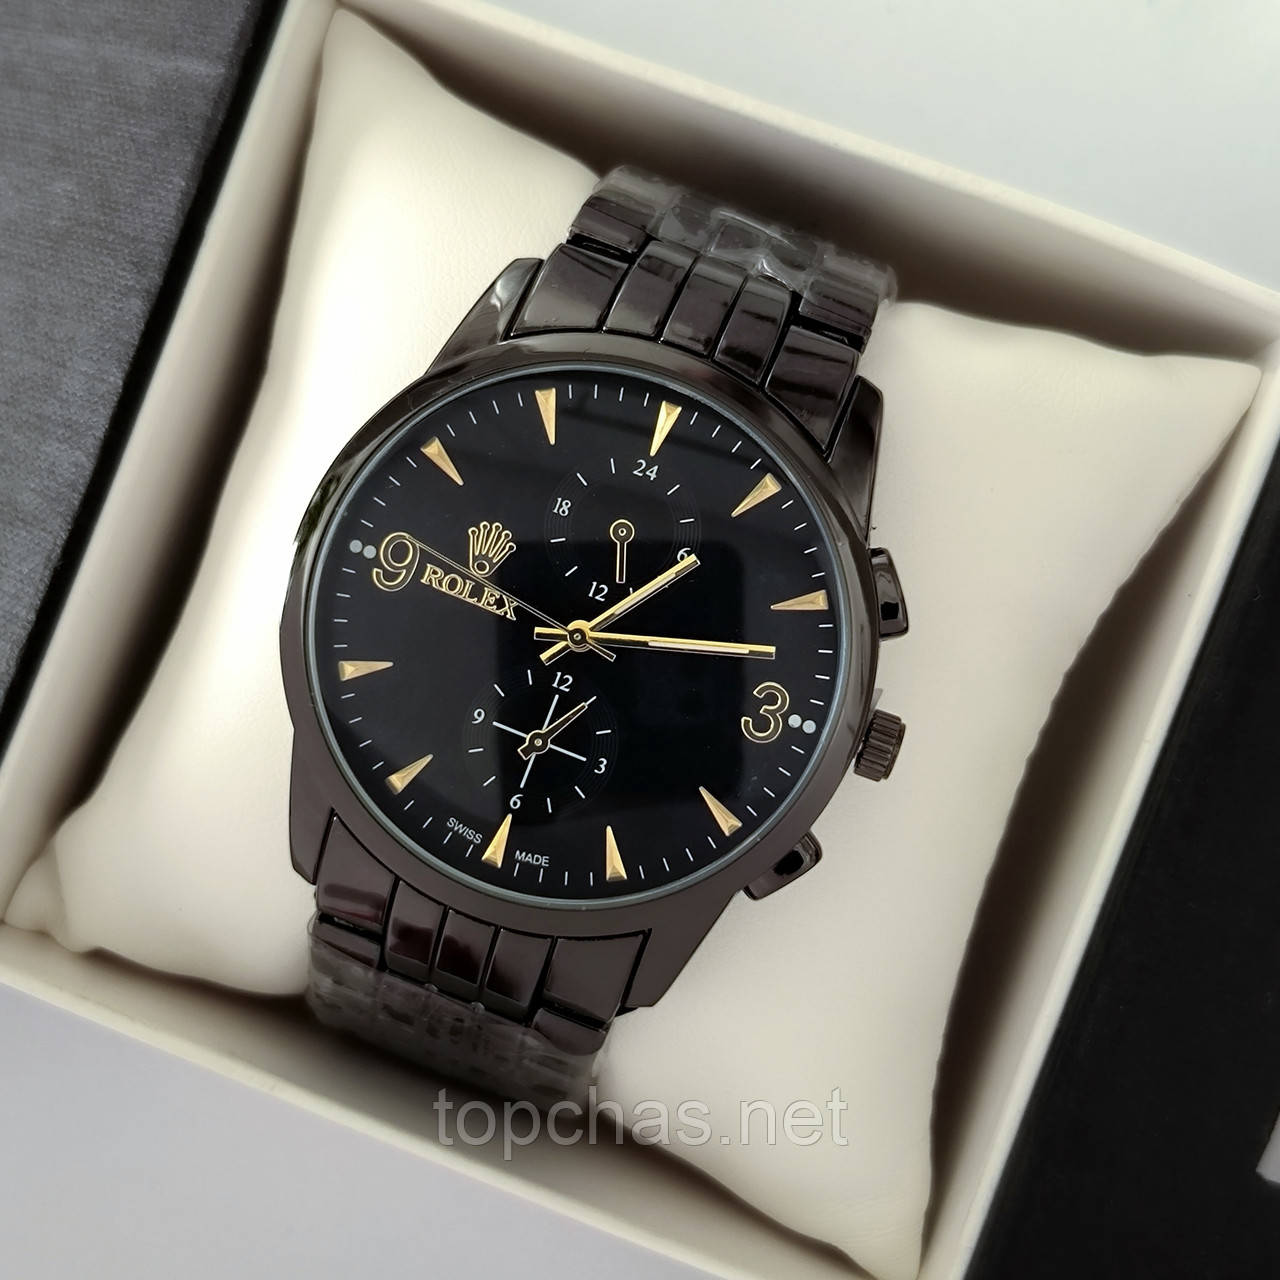 Наручний годинник для хлопців Rolex (ролекс), чорний з золотими елементами, антивідблискове скло - код 2193t